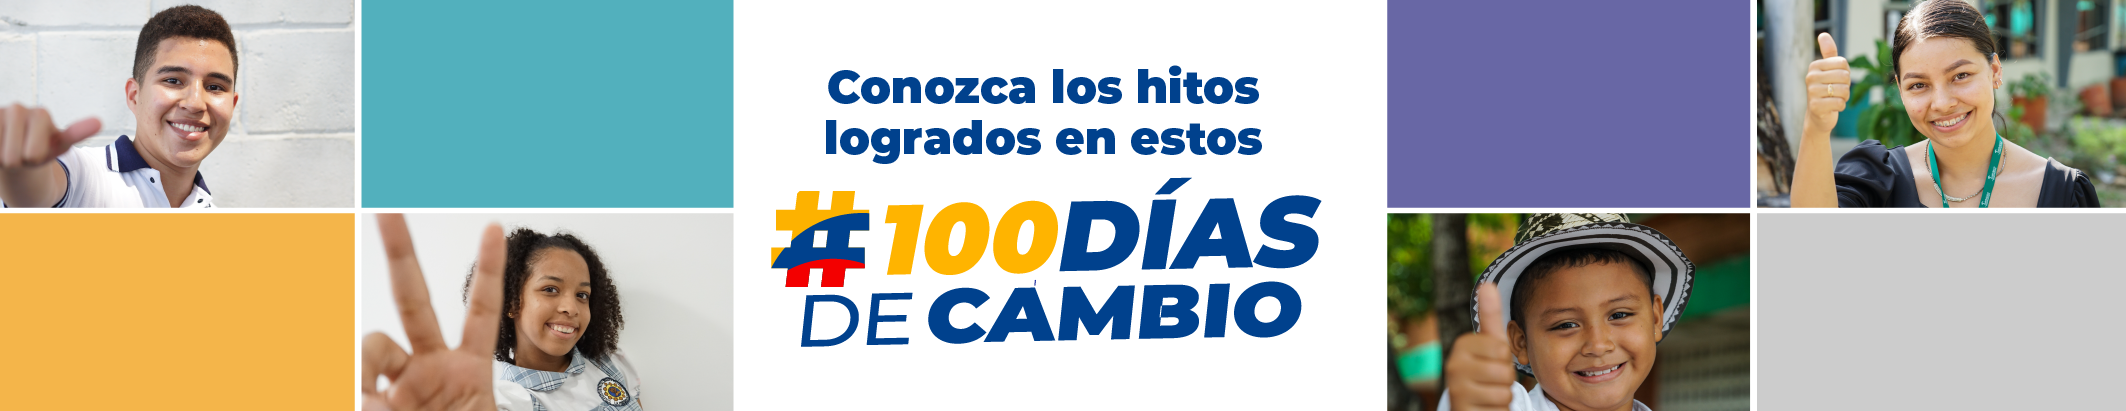  Botón que enlaza a El Gobierno del Cambio #100DíasdeCambio 